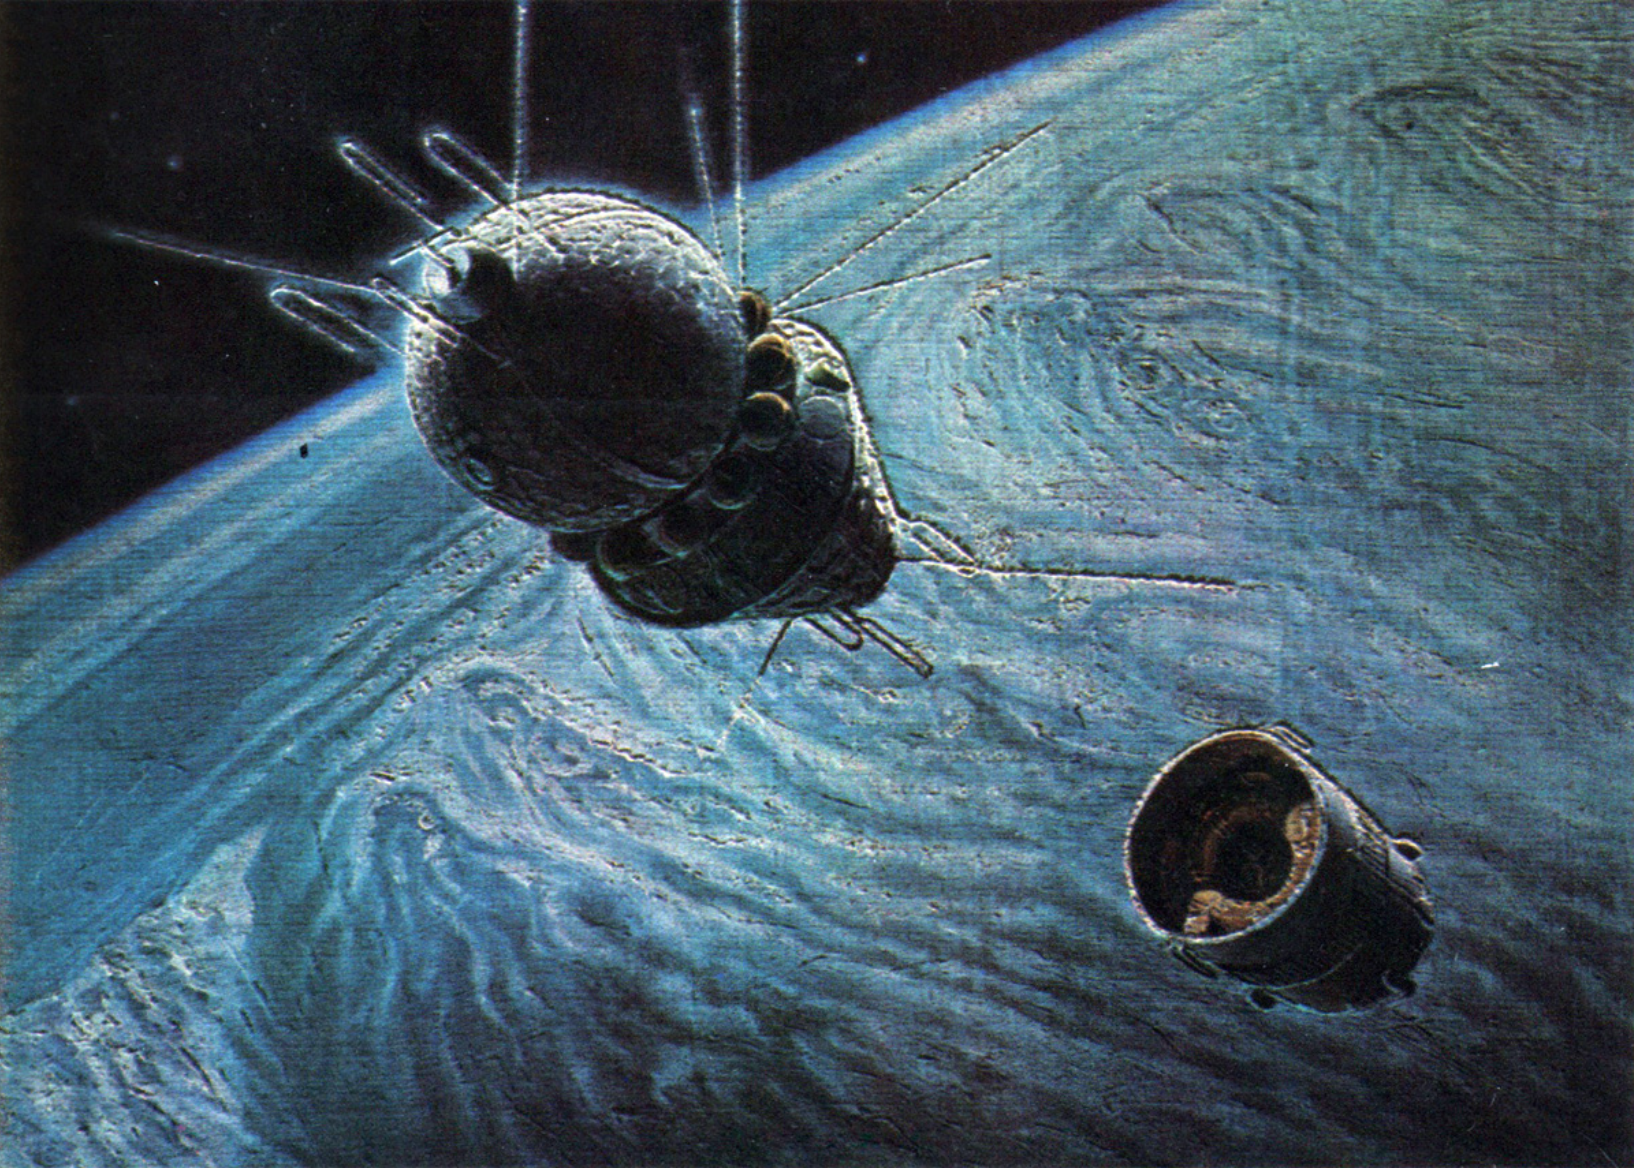 Первый корабль полетевший в космос. Космический корабль Гагарина Восток 1. А.Леонов, а.Соколов "на спутнике Юпитера". Космический корабль Восток картина Леонов.